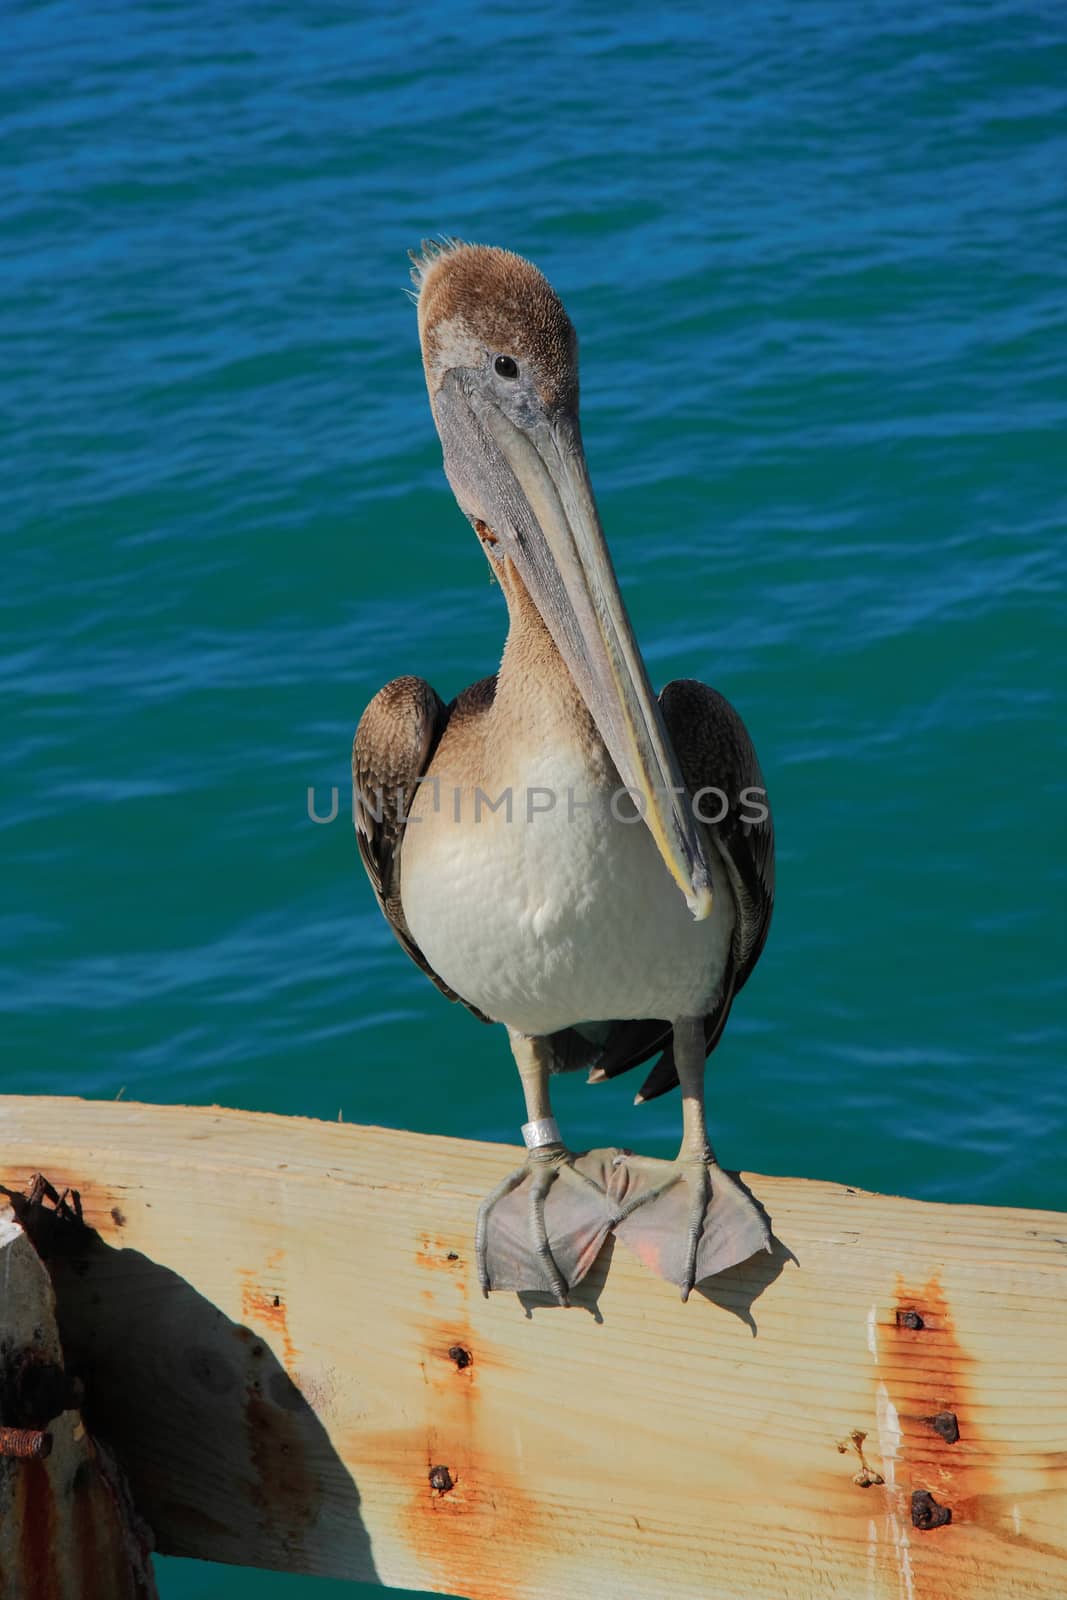 Key west's Pelican by worachatsodsri